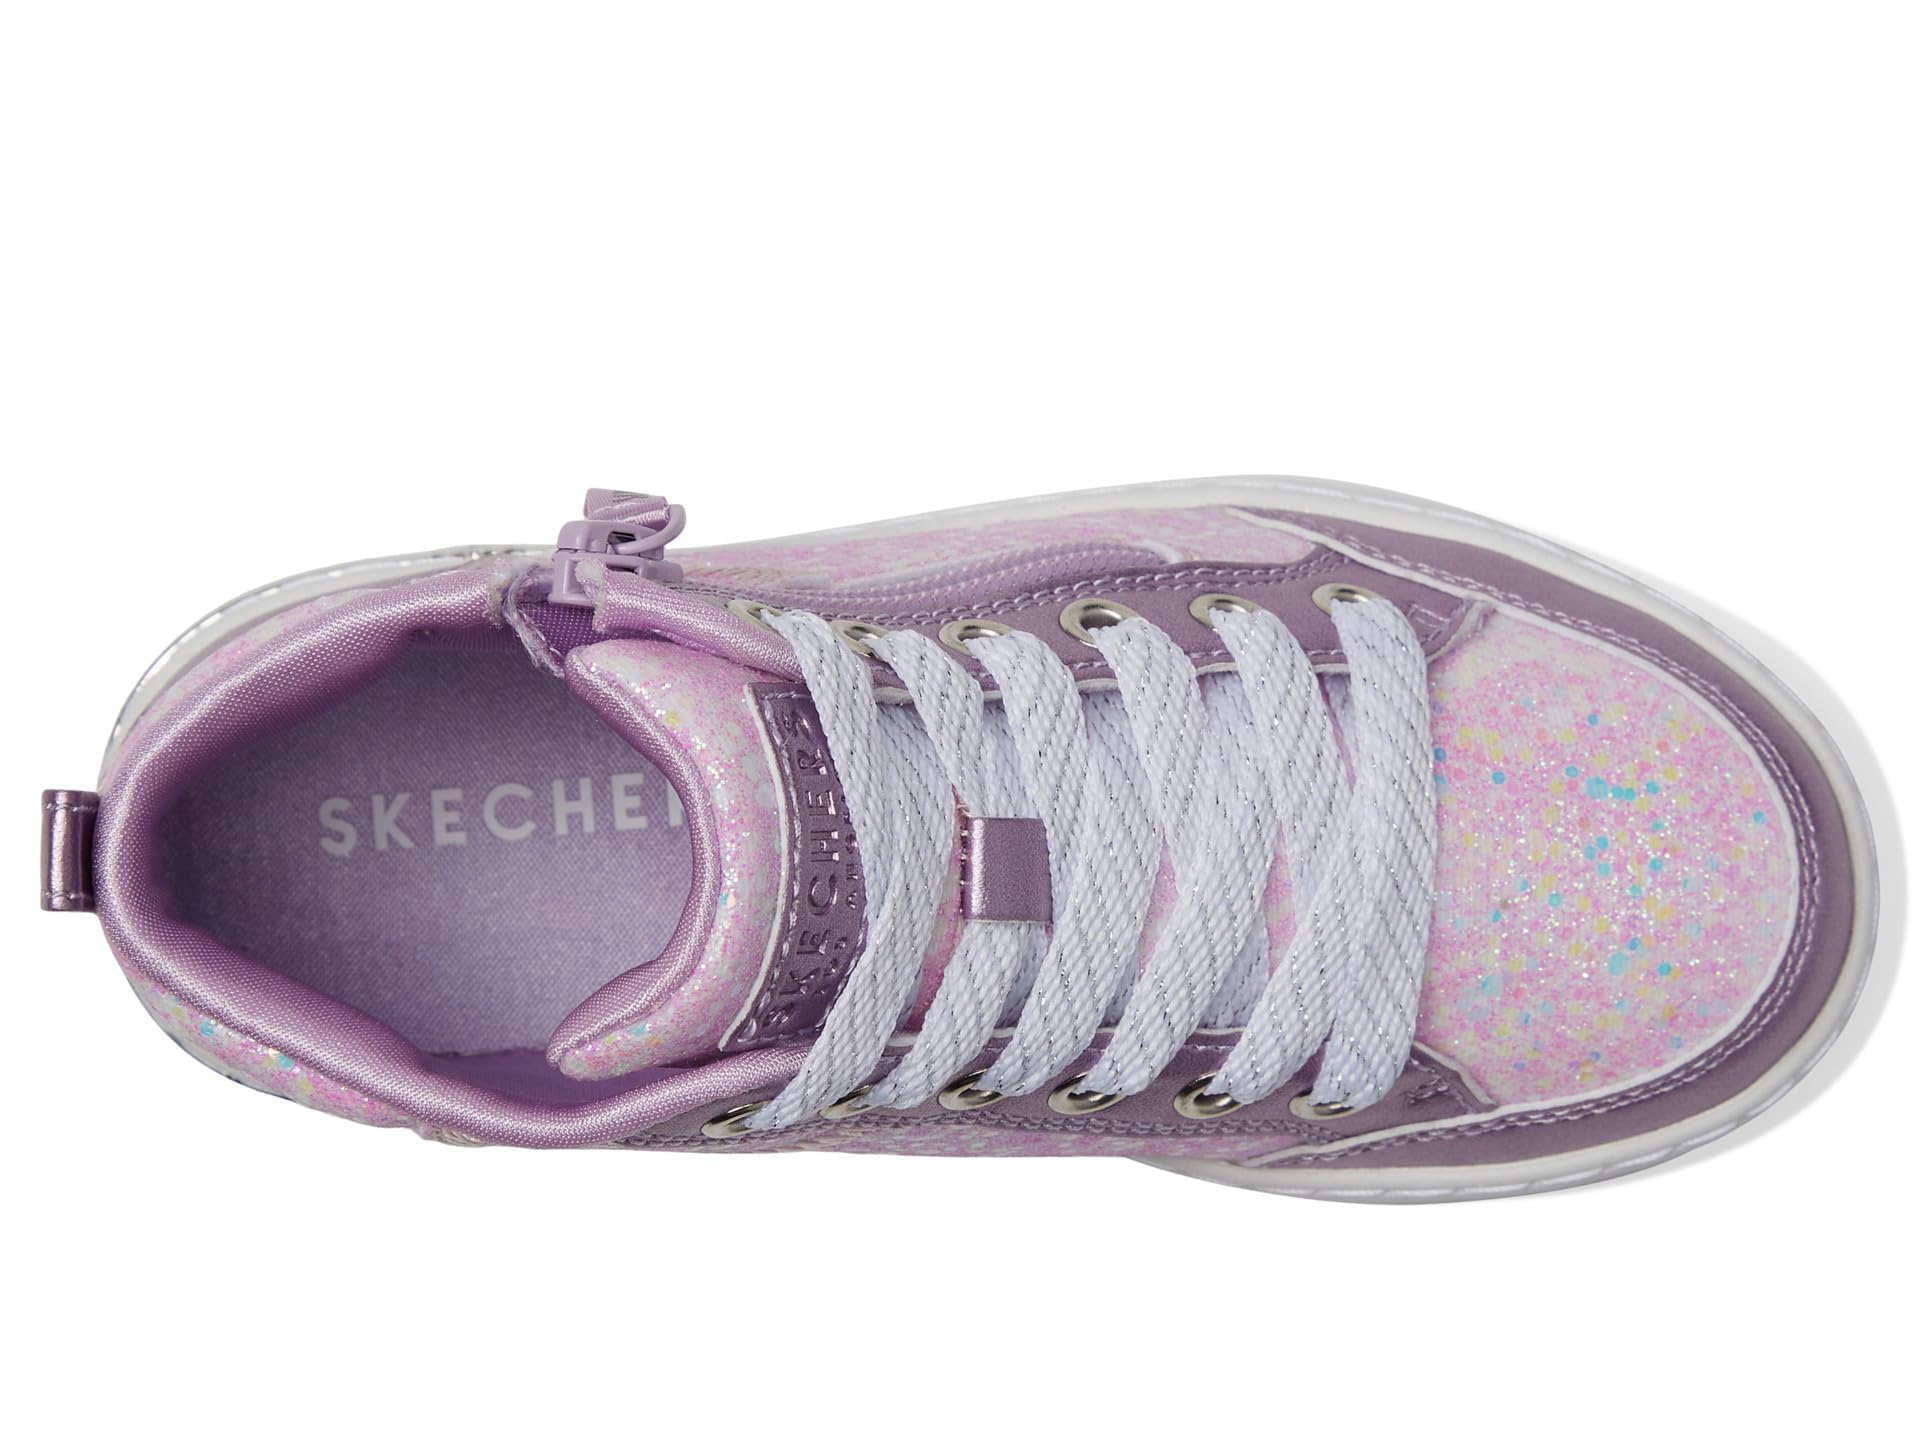 Skechers Unisex-Child Shoutouts 2.0 Sneaker